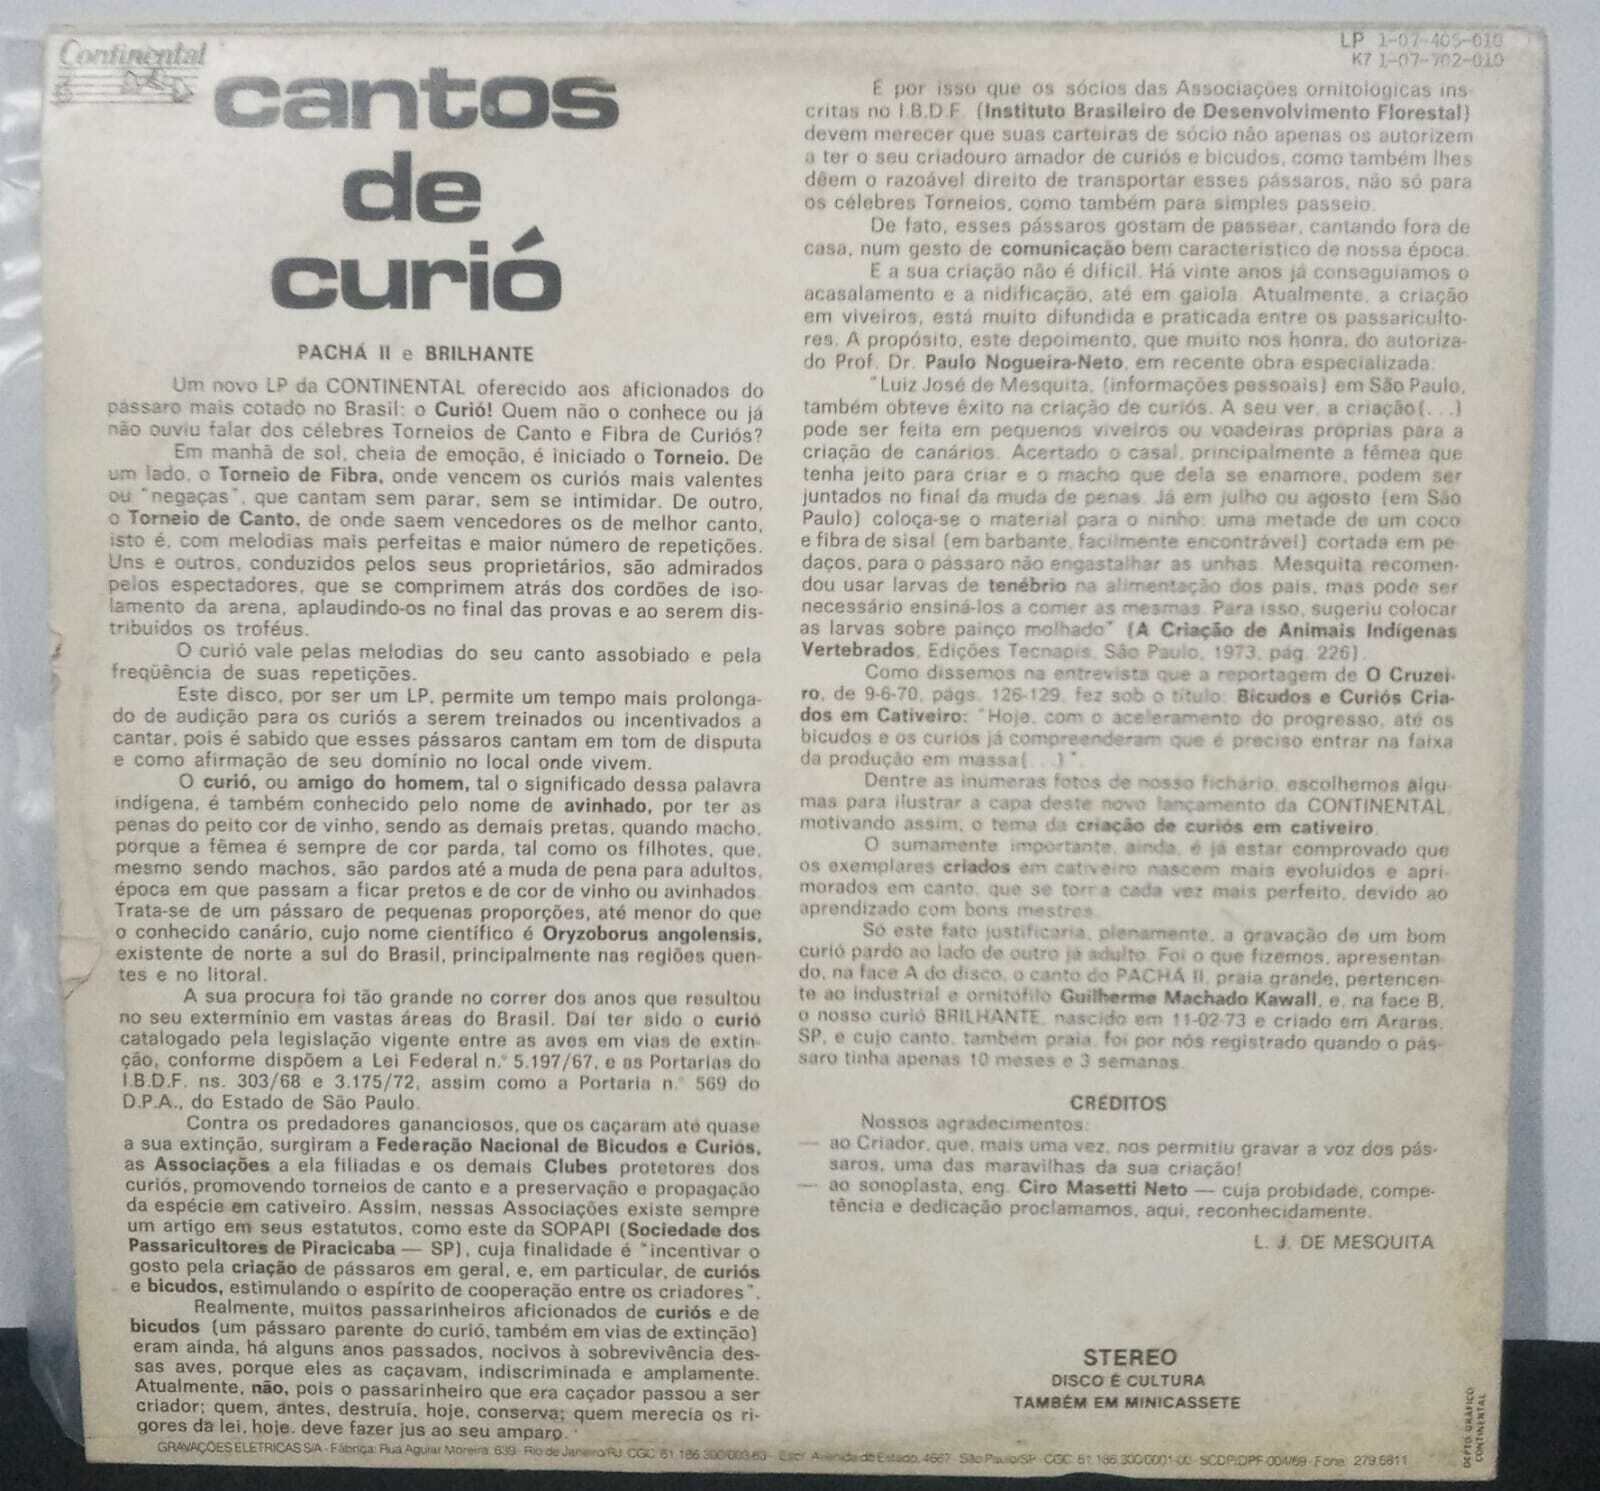 Vinil - Cantos De Curio - Curio Pacha II E Brilhante